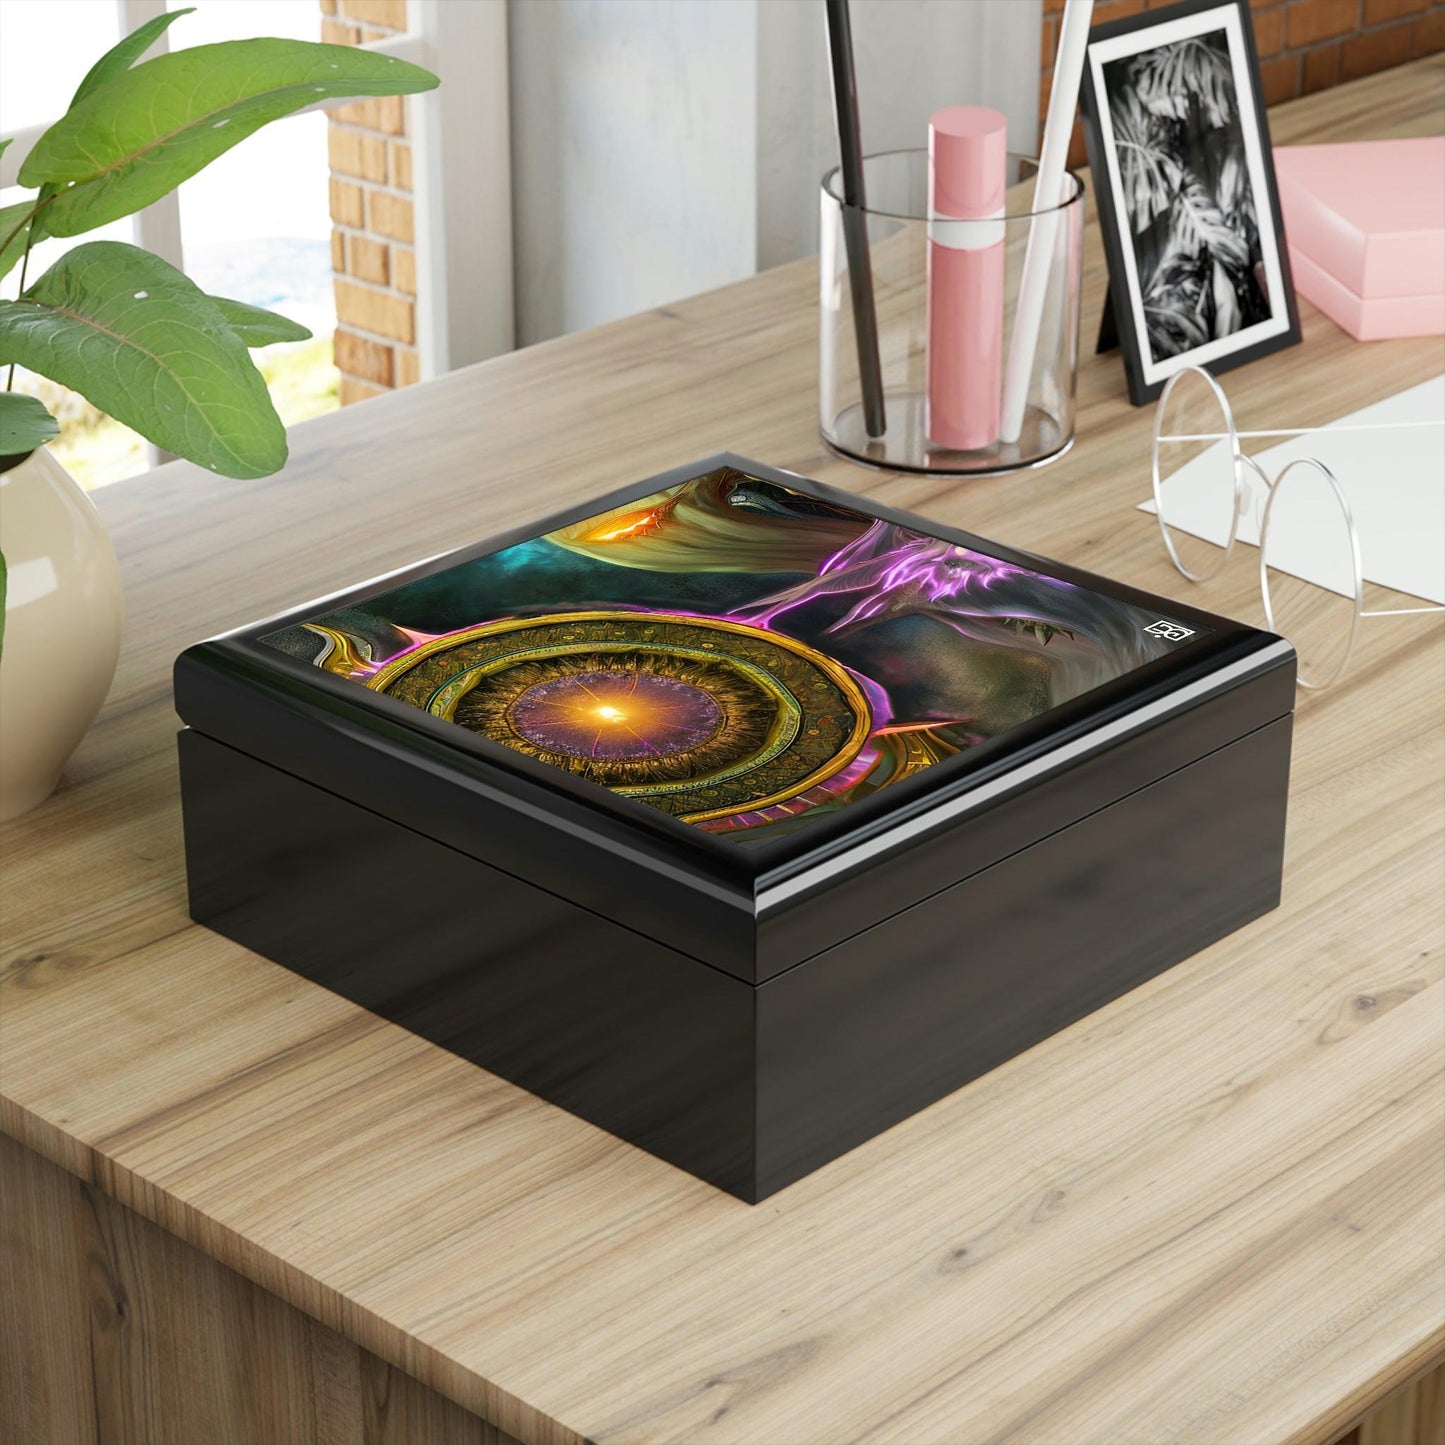 Planetary-Magic-Emas-Energy-Jewelry-Box-untuk-menyimpan-azimat-dan-cincin anda